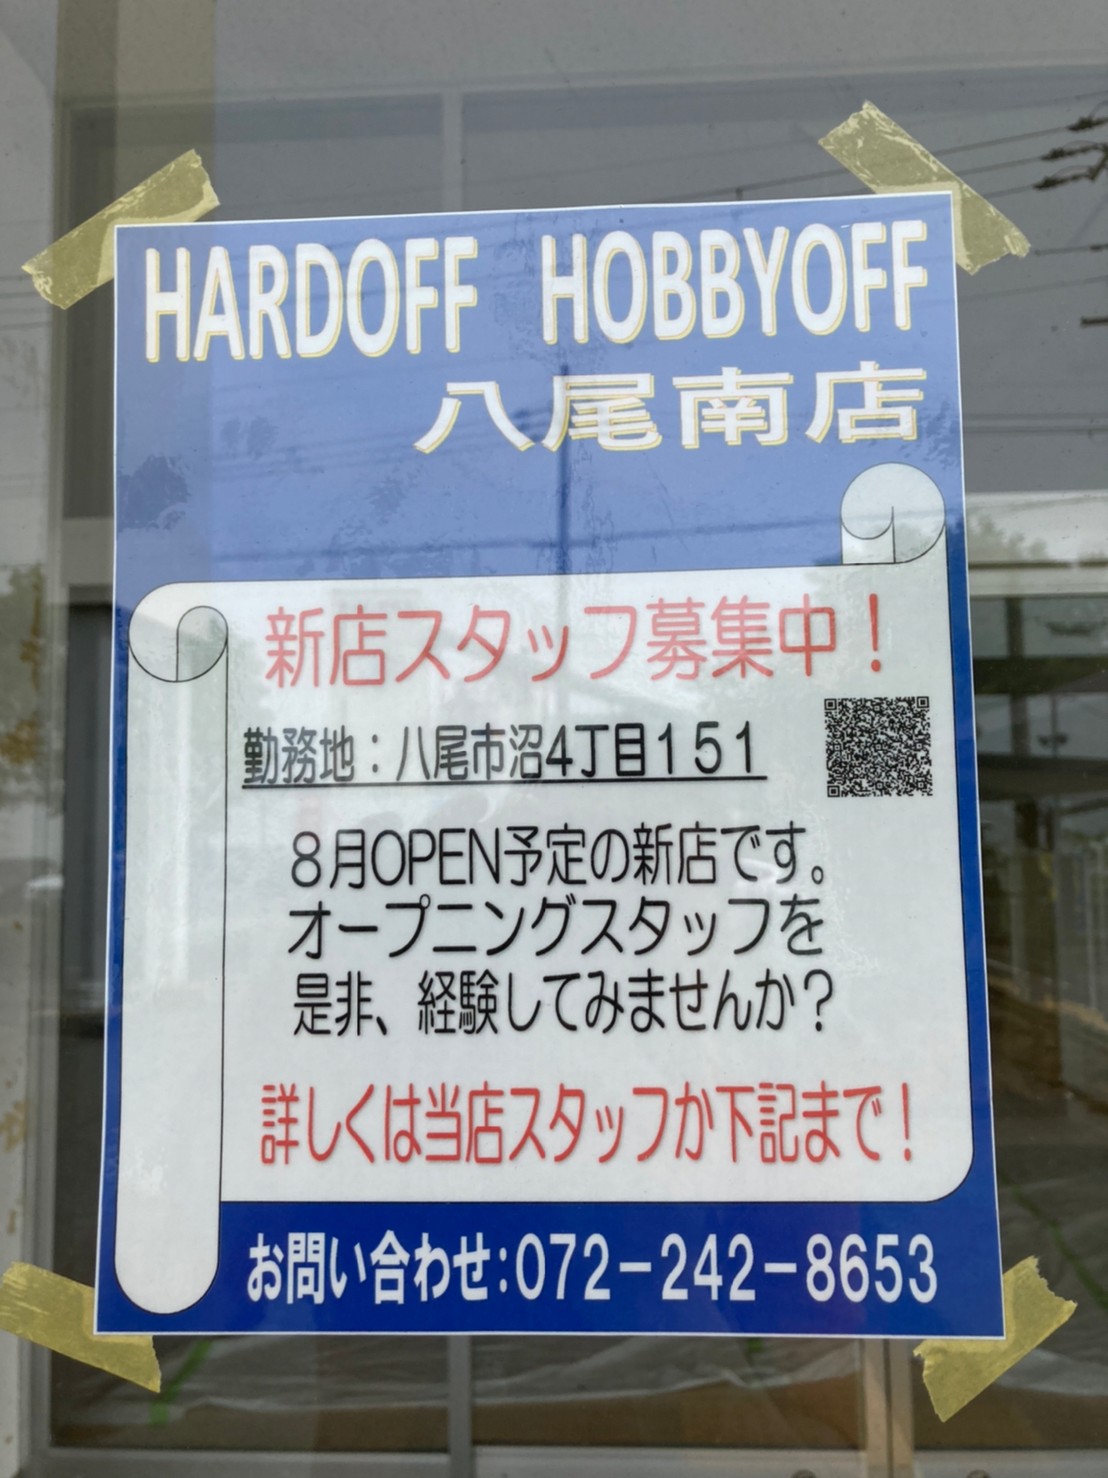 八尾市 ハードオフ ホビーオフ が八尾市初出店 グランドオープンは8月18日 Atako Yahoo Japan クリエイターズプログラム